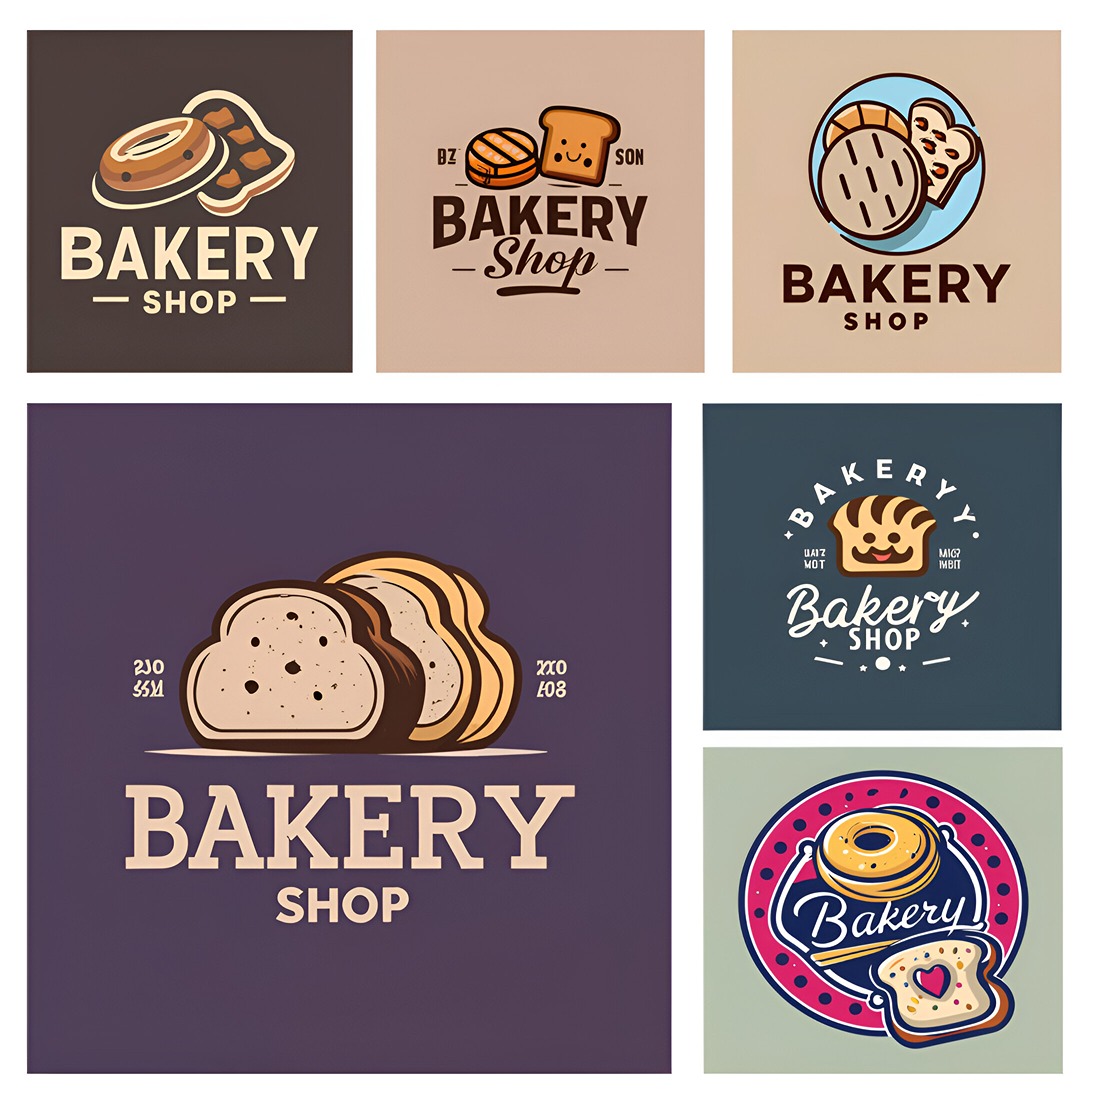 bakery shop logo 06 copy 11zon 665